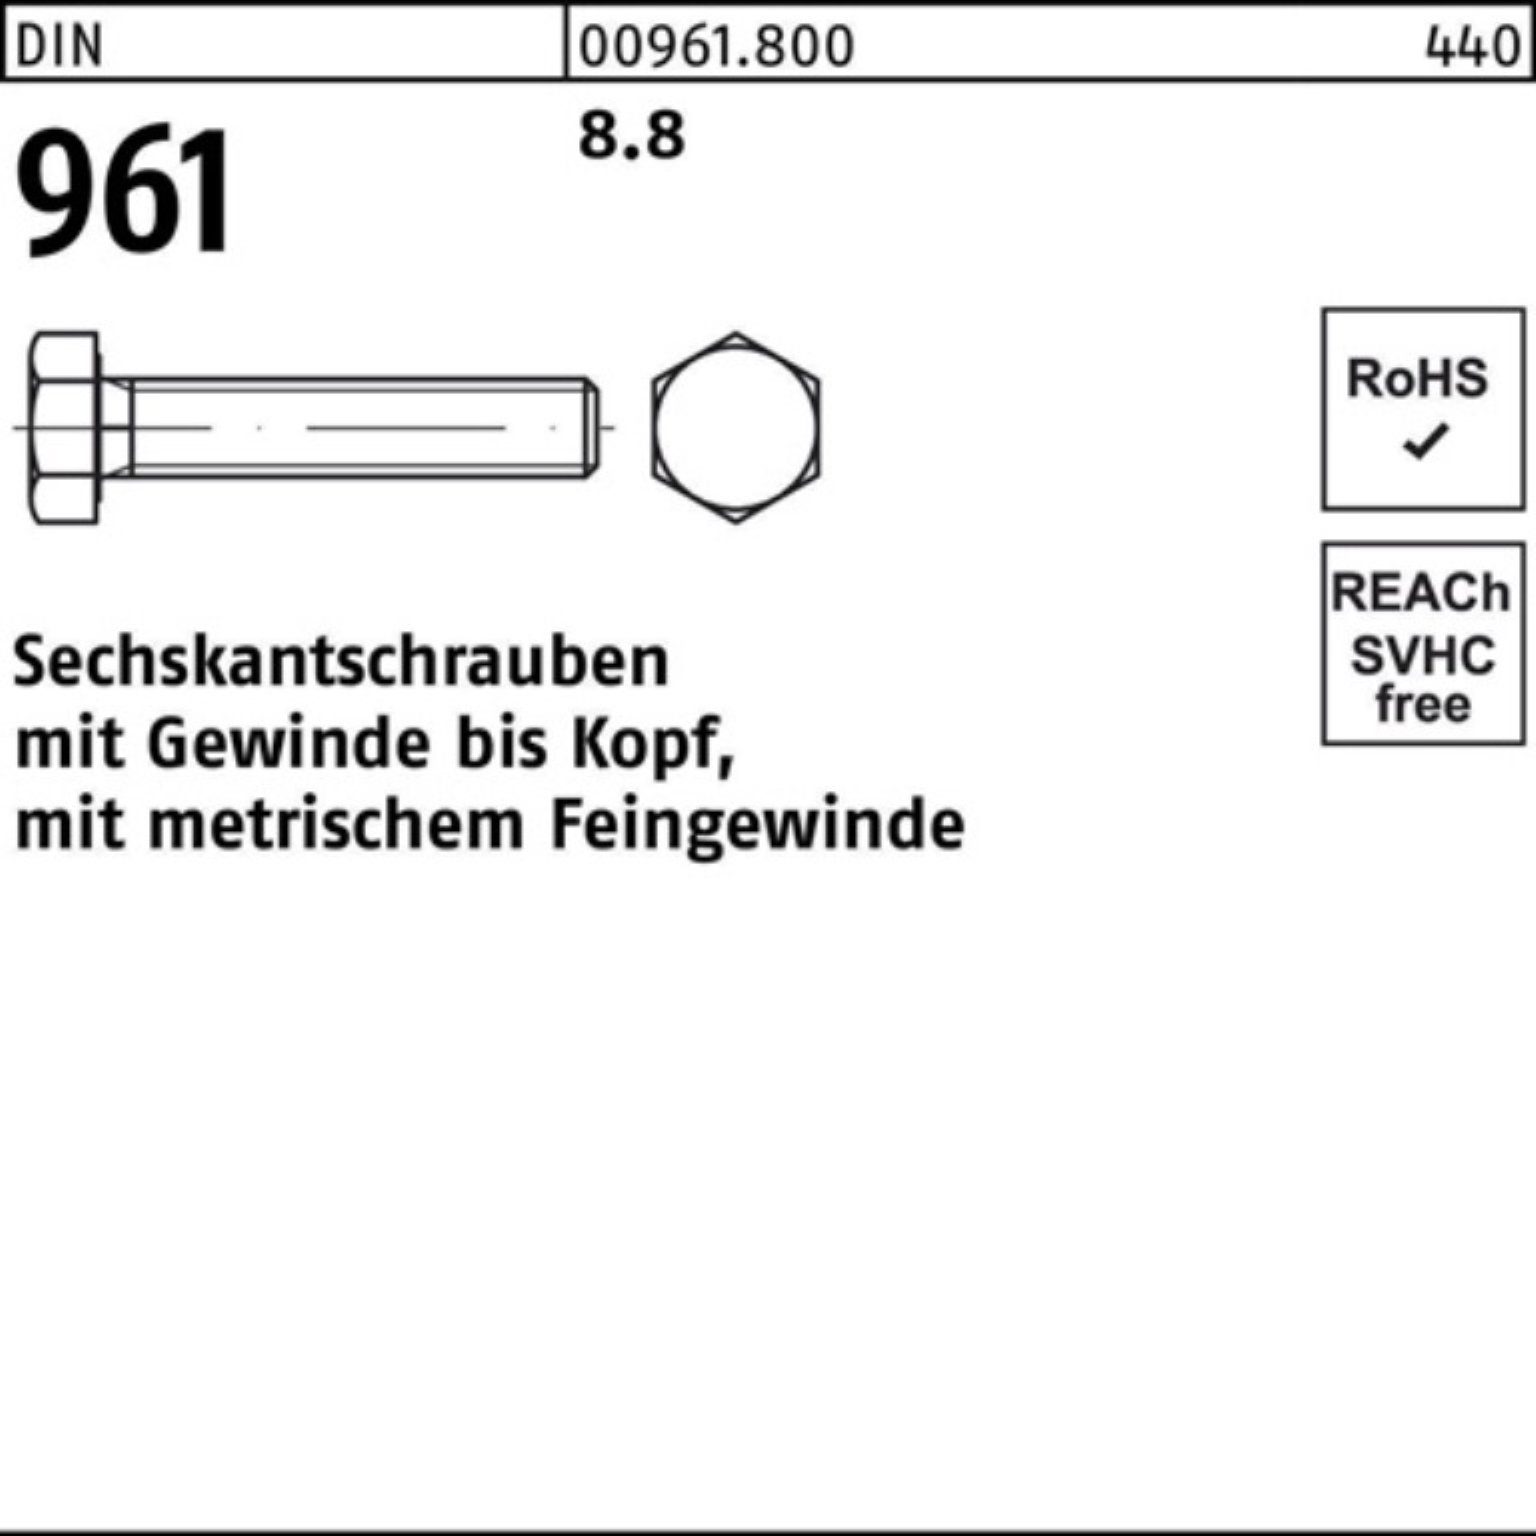 Sechskantschraube Reyher 8.8 DIN DIN Pack 961 961 1 Sechskantschraube M30x2x100 100er Stück VG